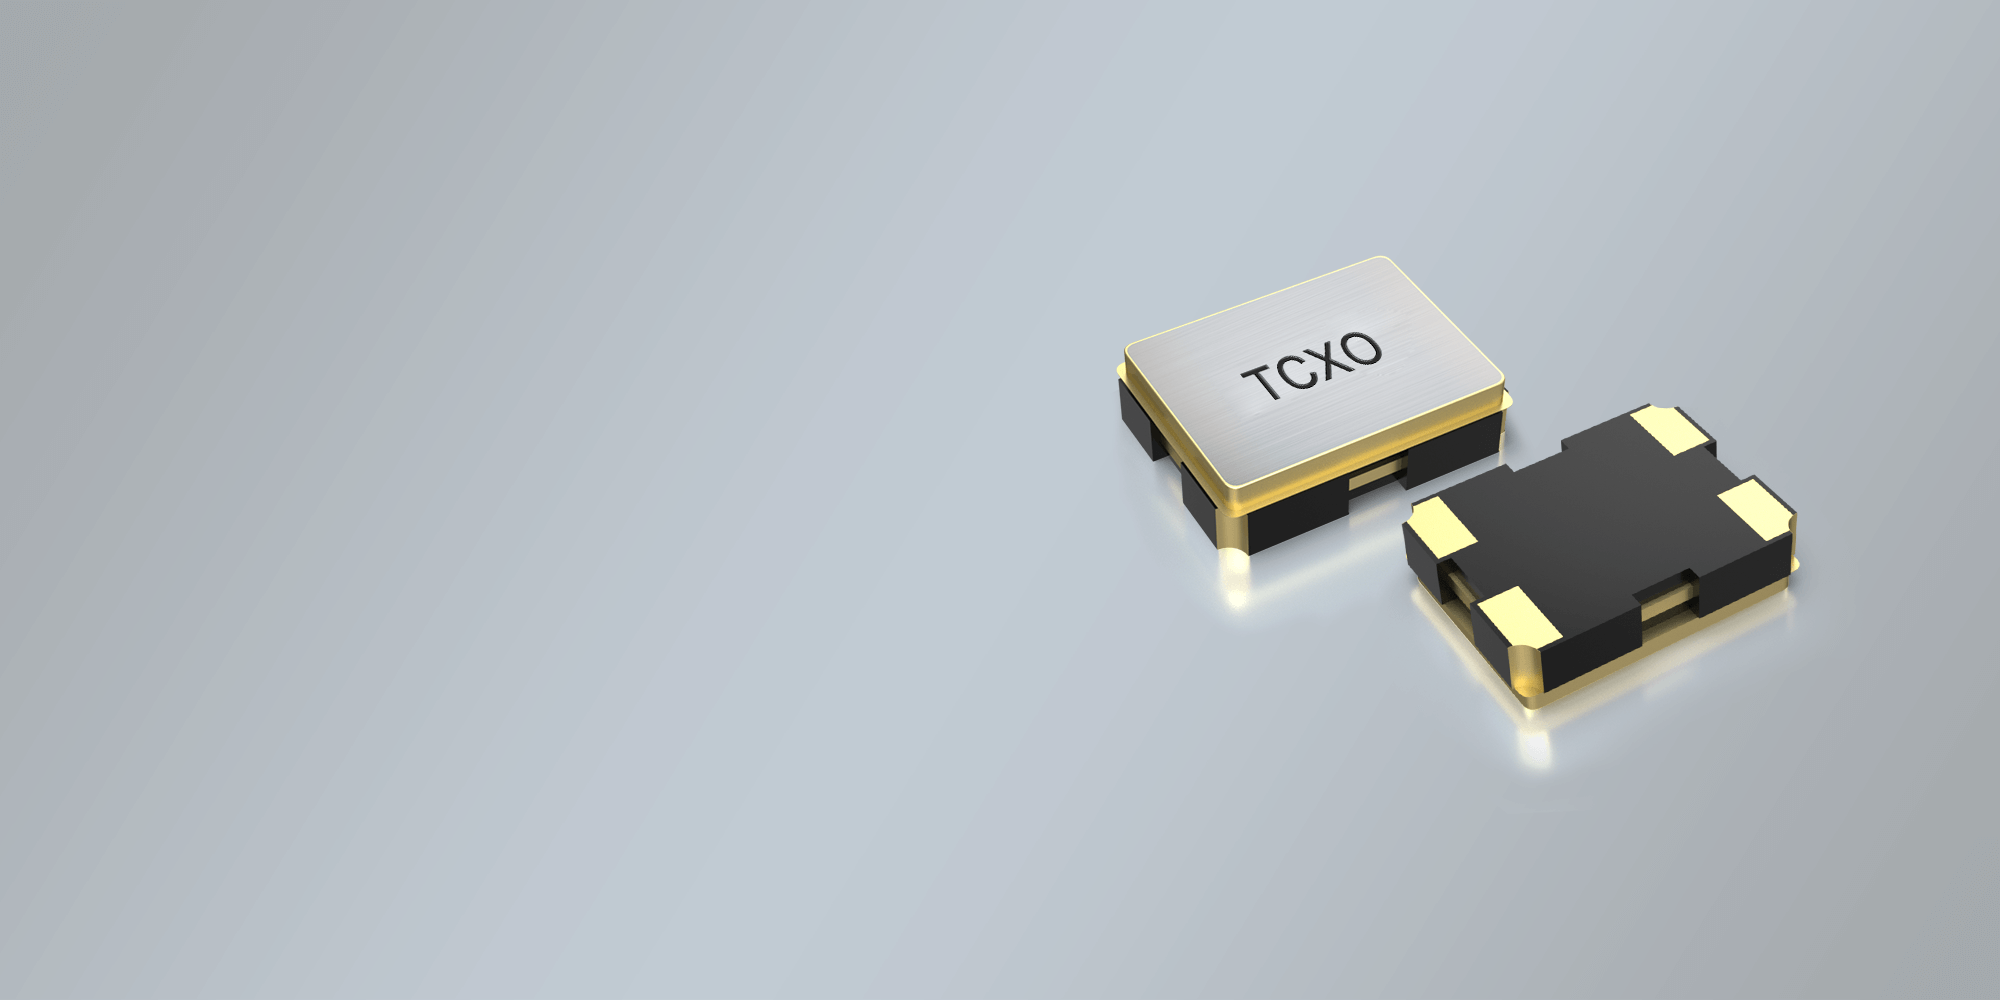 SMD TCXO OSCILLATOR 3.2 x 2.5 mm